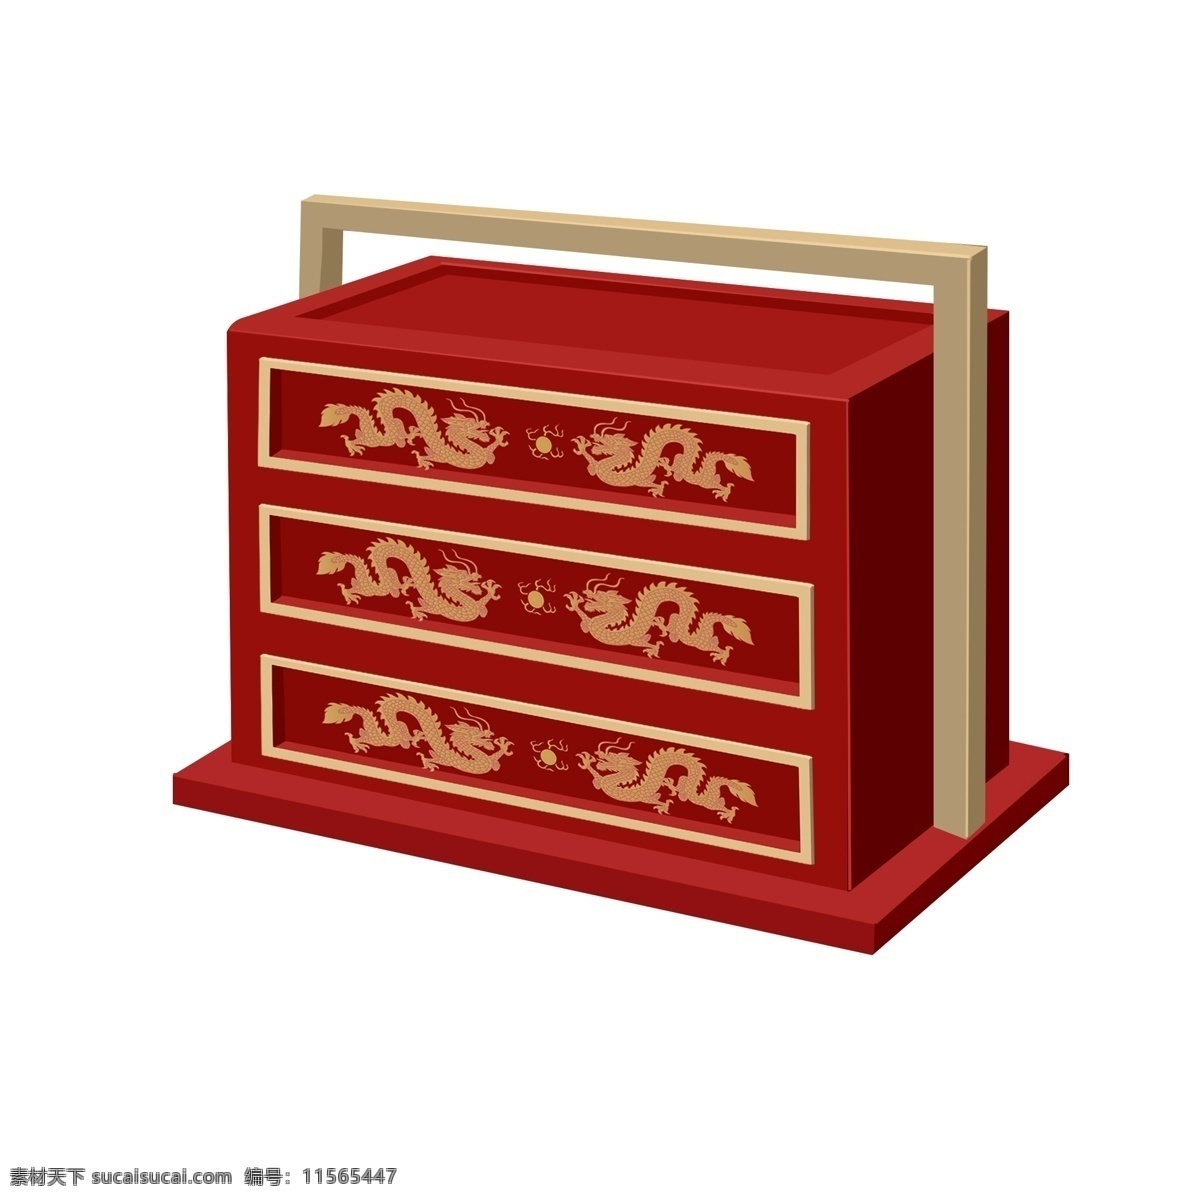 龙 纹 雕花 礼物 盒子 透明 底 礼物盒子 喜庆 金龙 金色 木质把手 食盒 赠送 送礼 红色 古代食盒